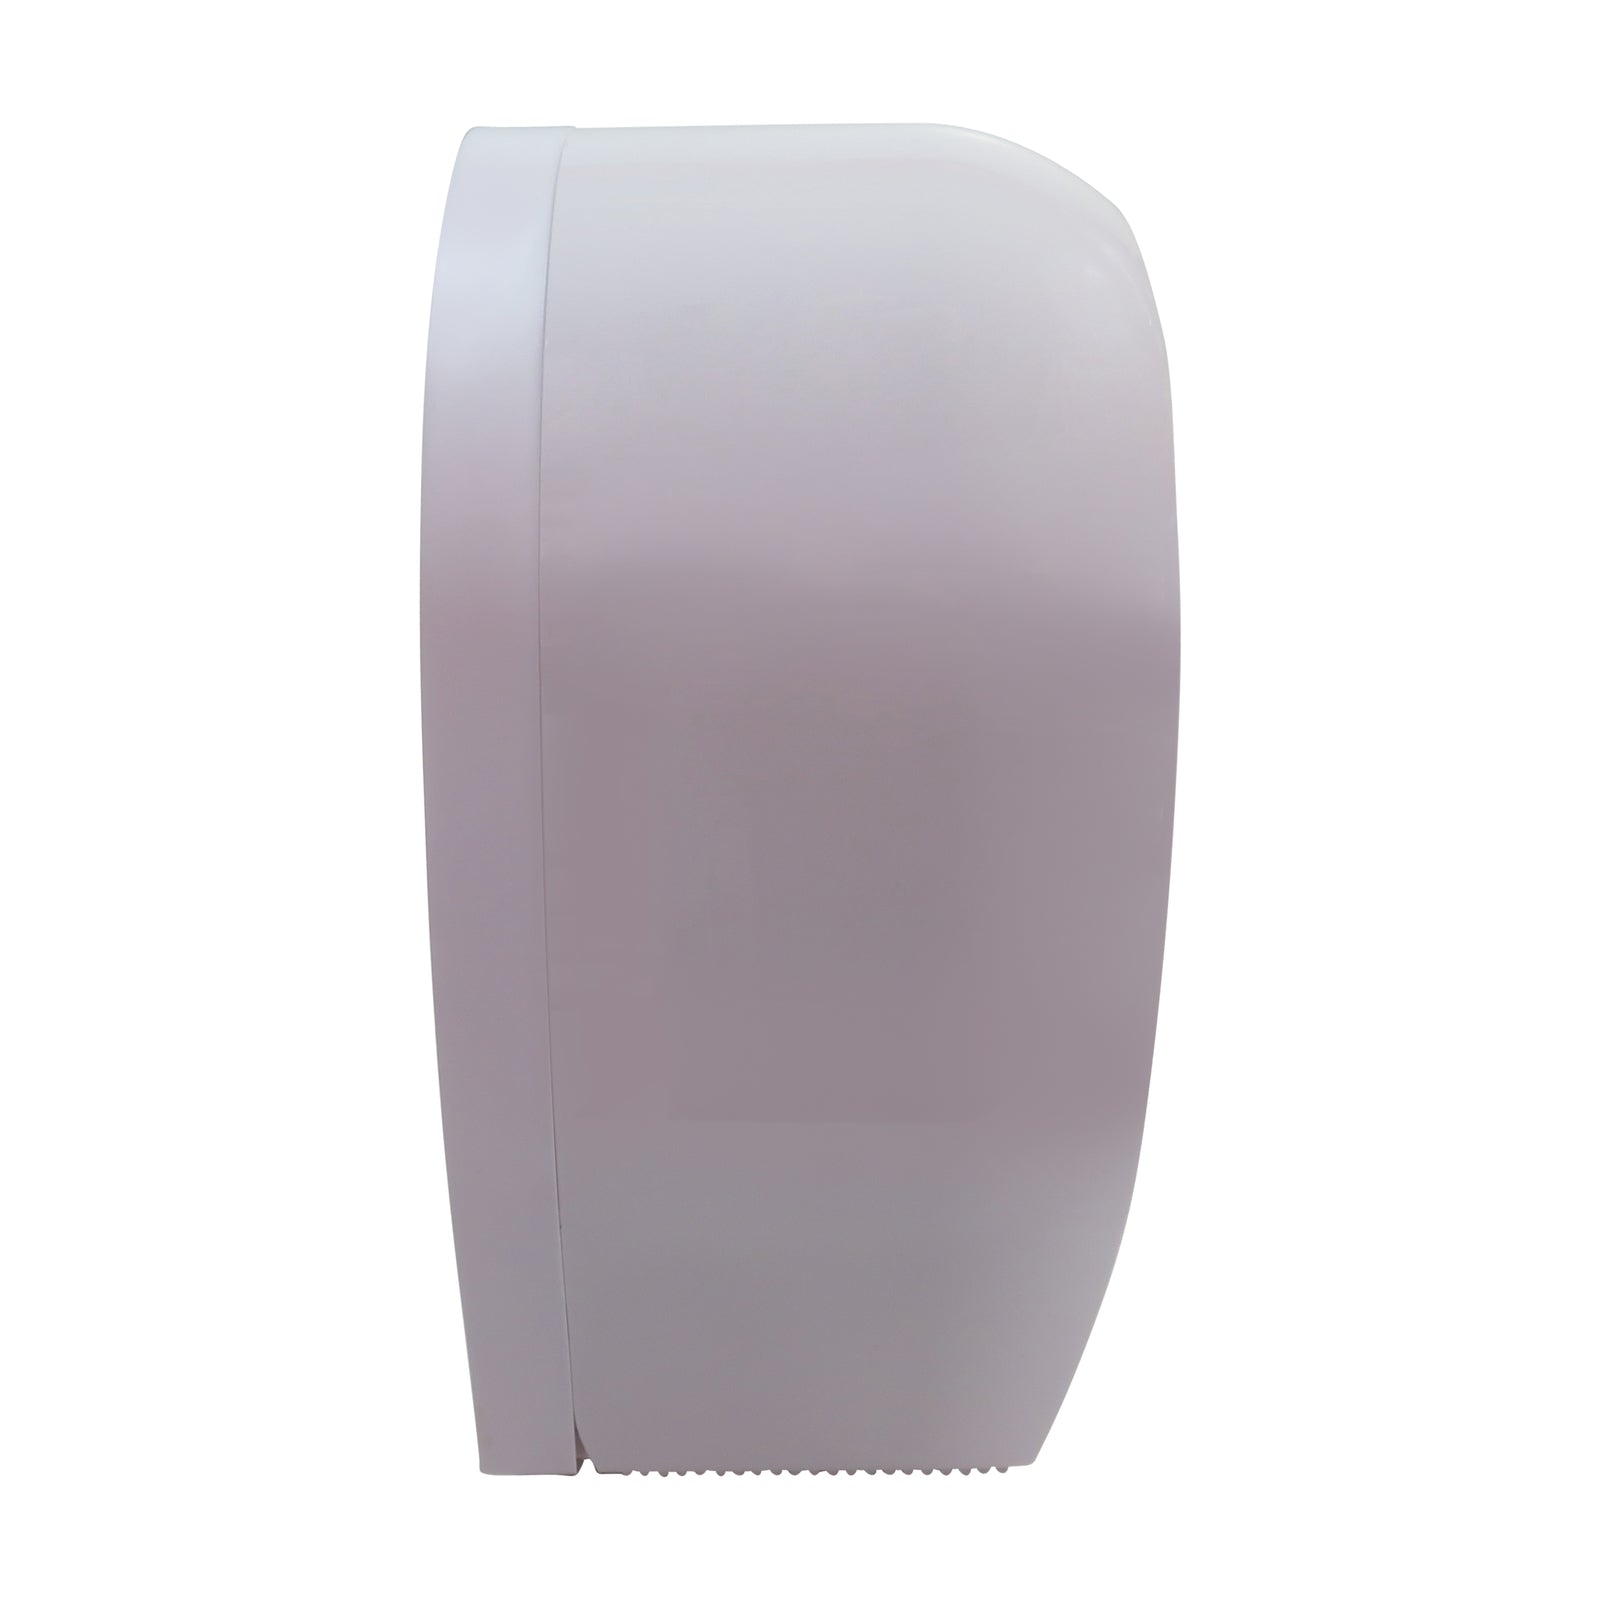 Jumbo Toilet Roll Dispenser - Plastic